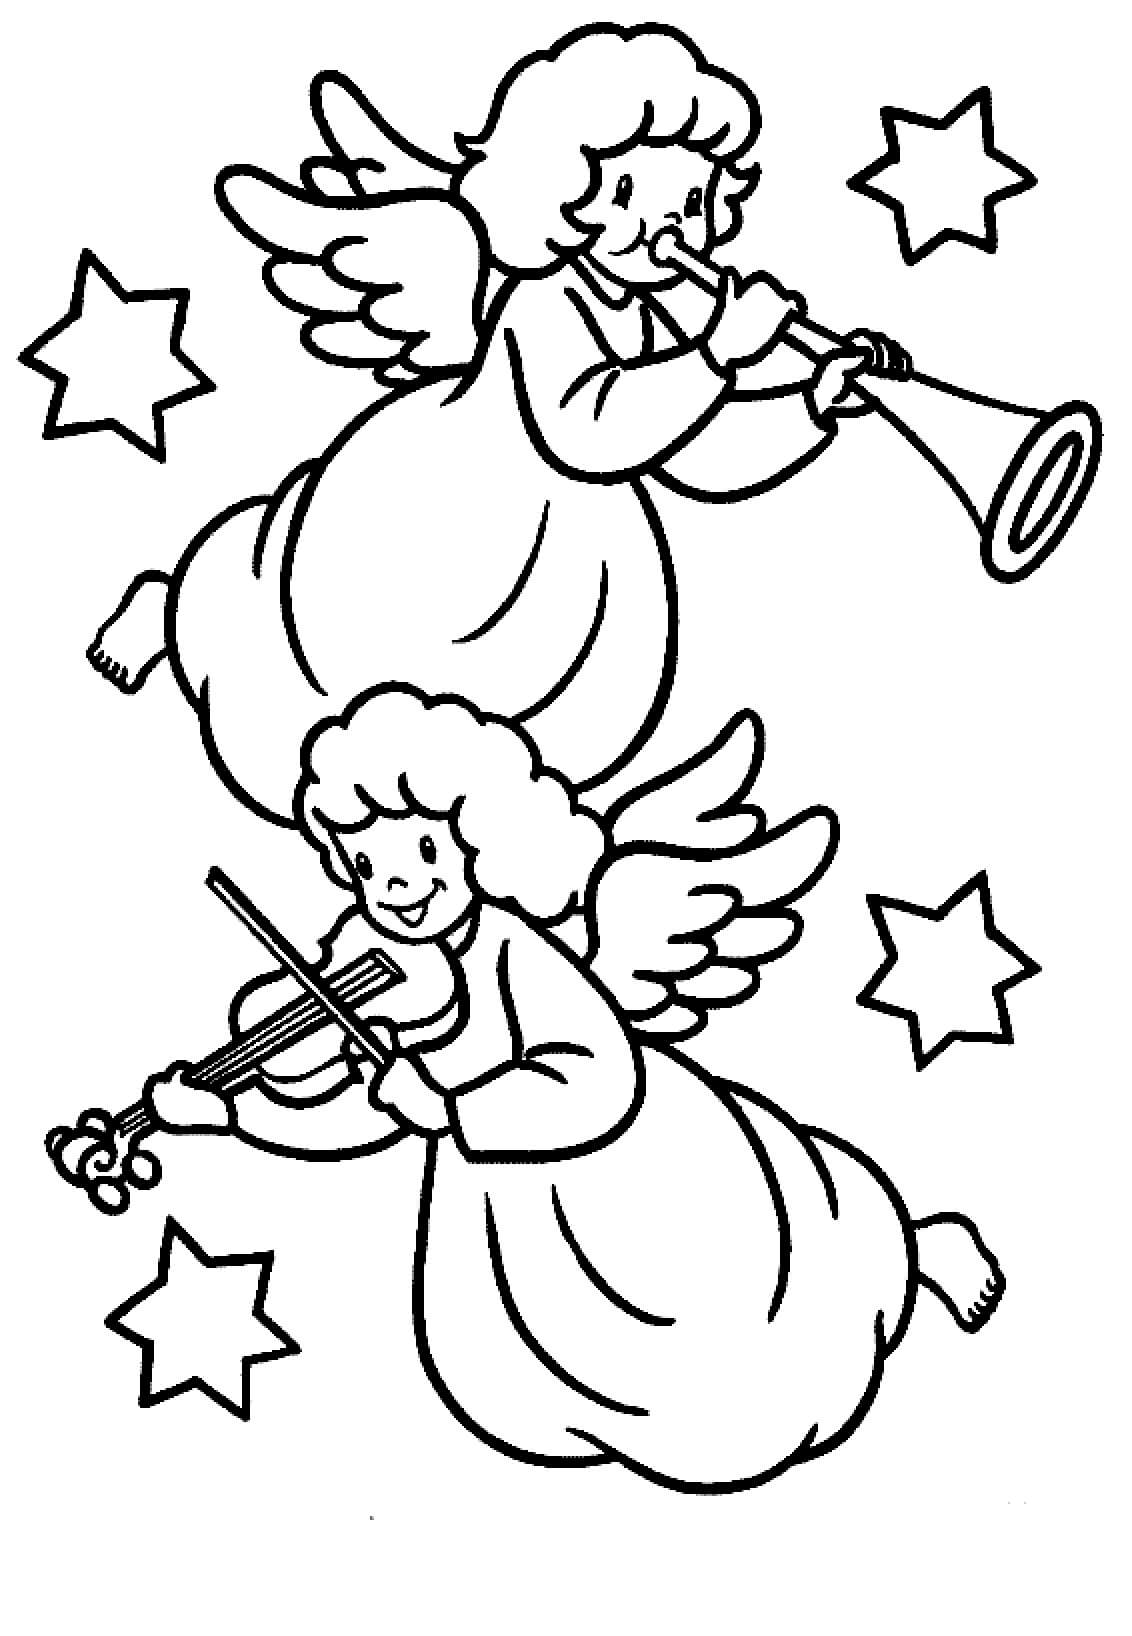 Trompette et Violon coloring page